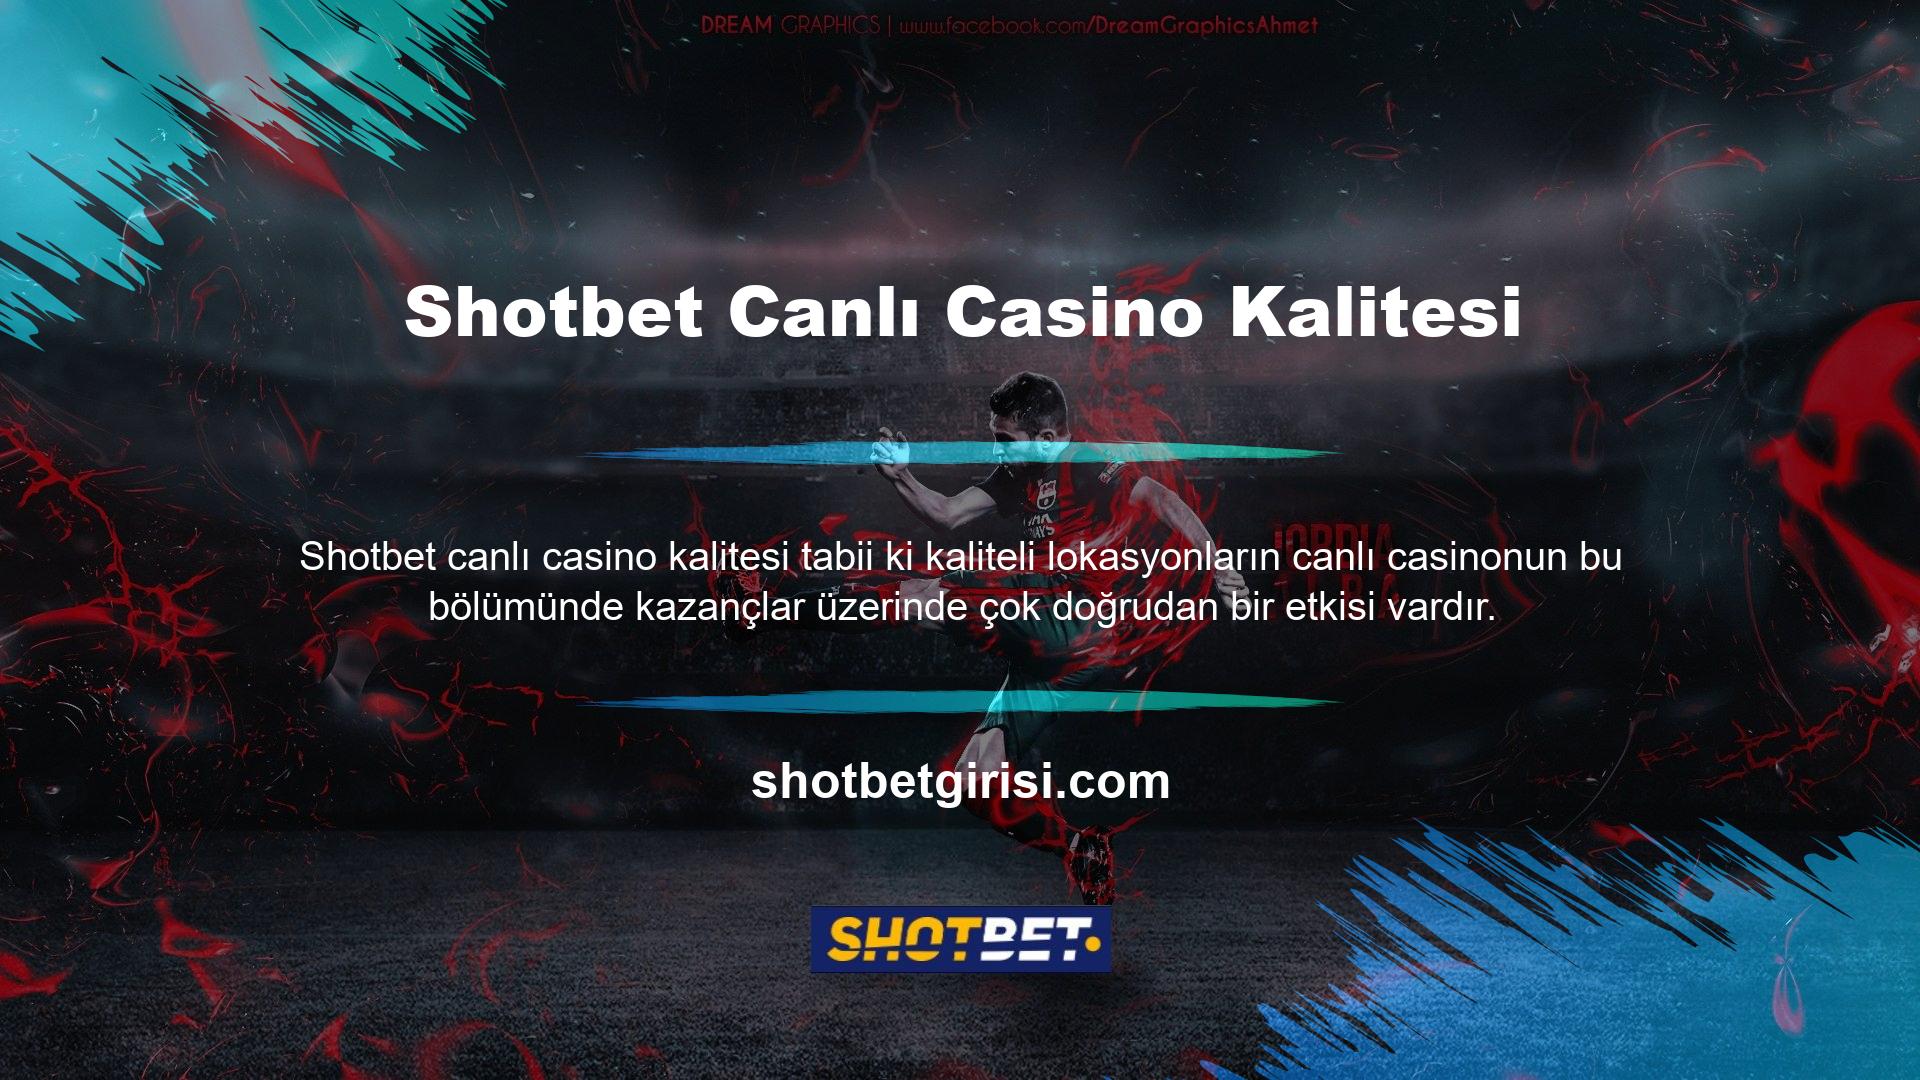 Shotbet Canlı Casino Kalitesi Shotbet Canlı Casino kalitesi göz önünde bulundurularak bu hizmetler kaliteli bir marka altyapısına sahip müşteriler için tasarlanmıştır